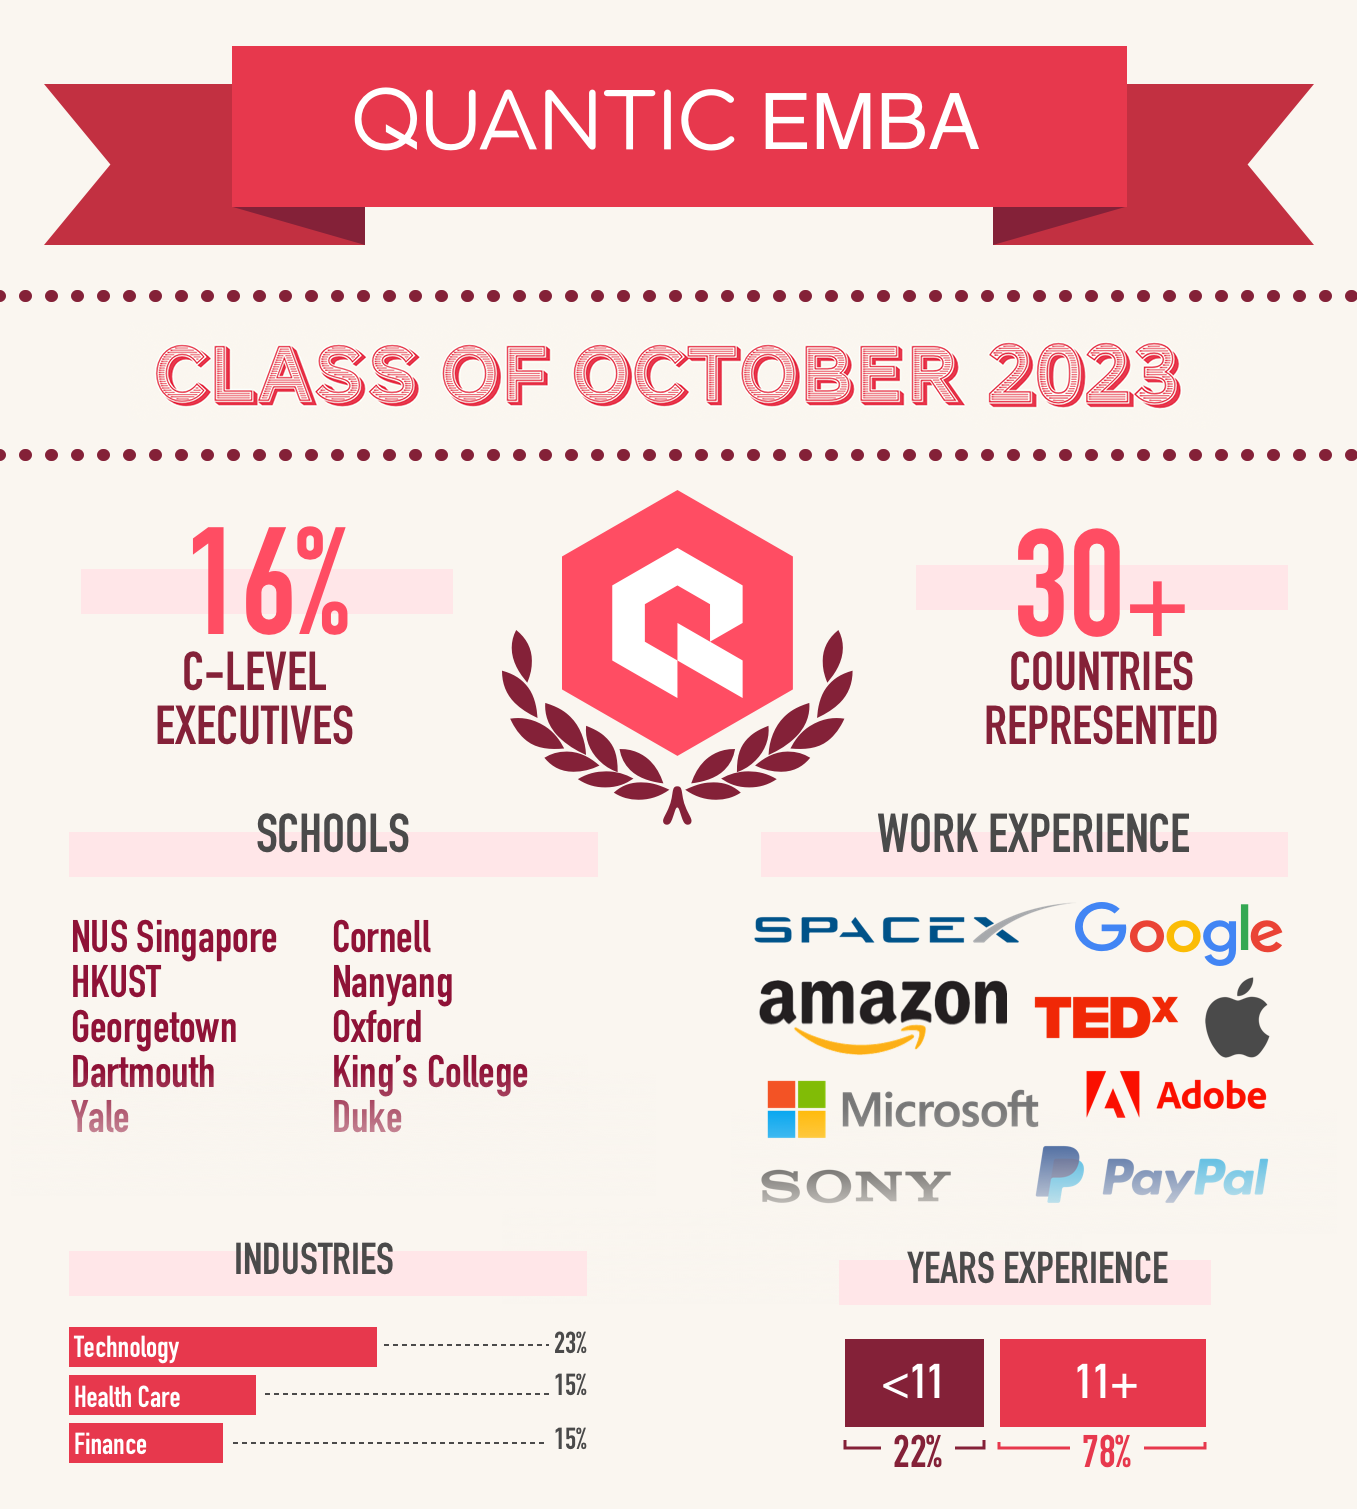 Quantic EMBA 2023 class of October 2023